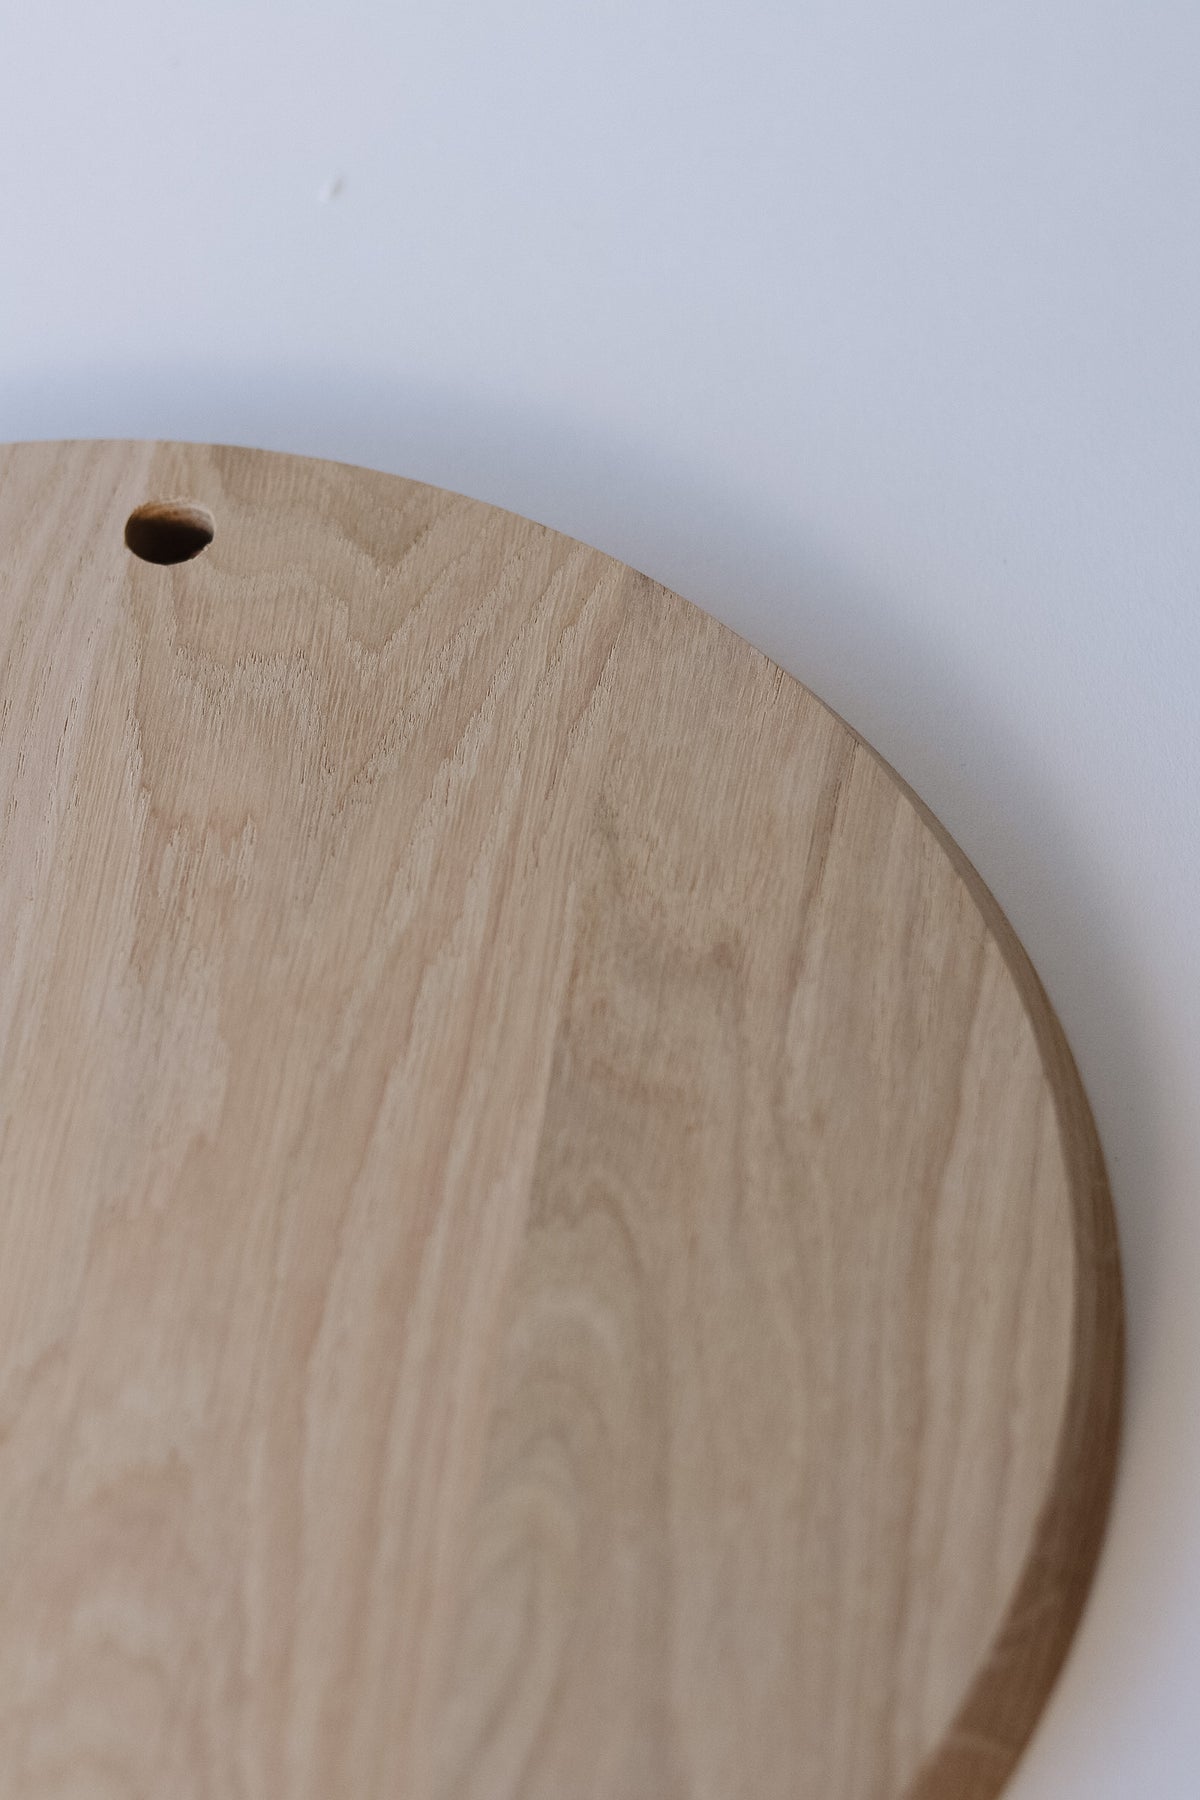 Oak Cutting Board - Round